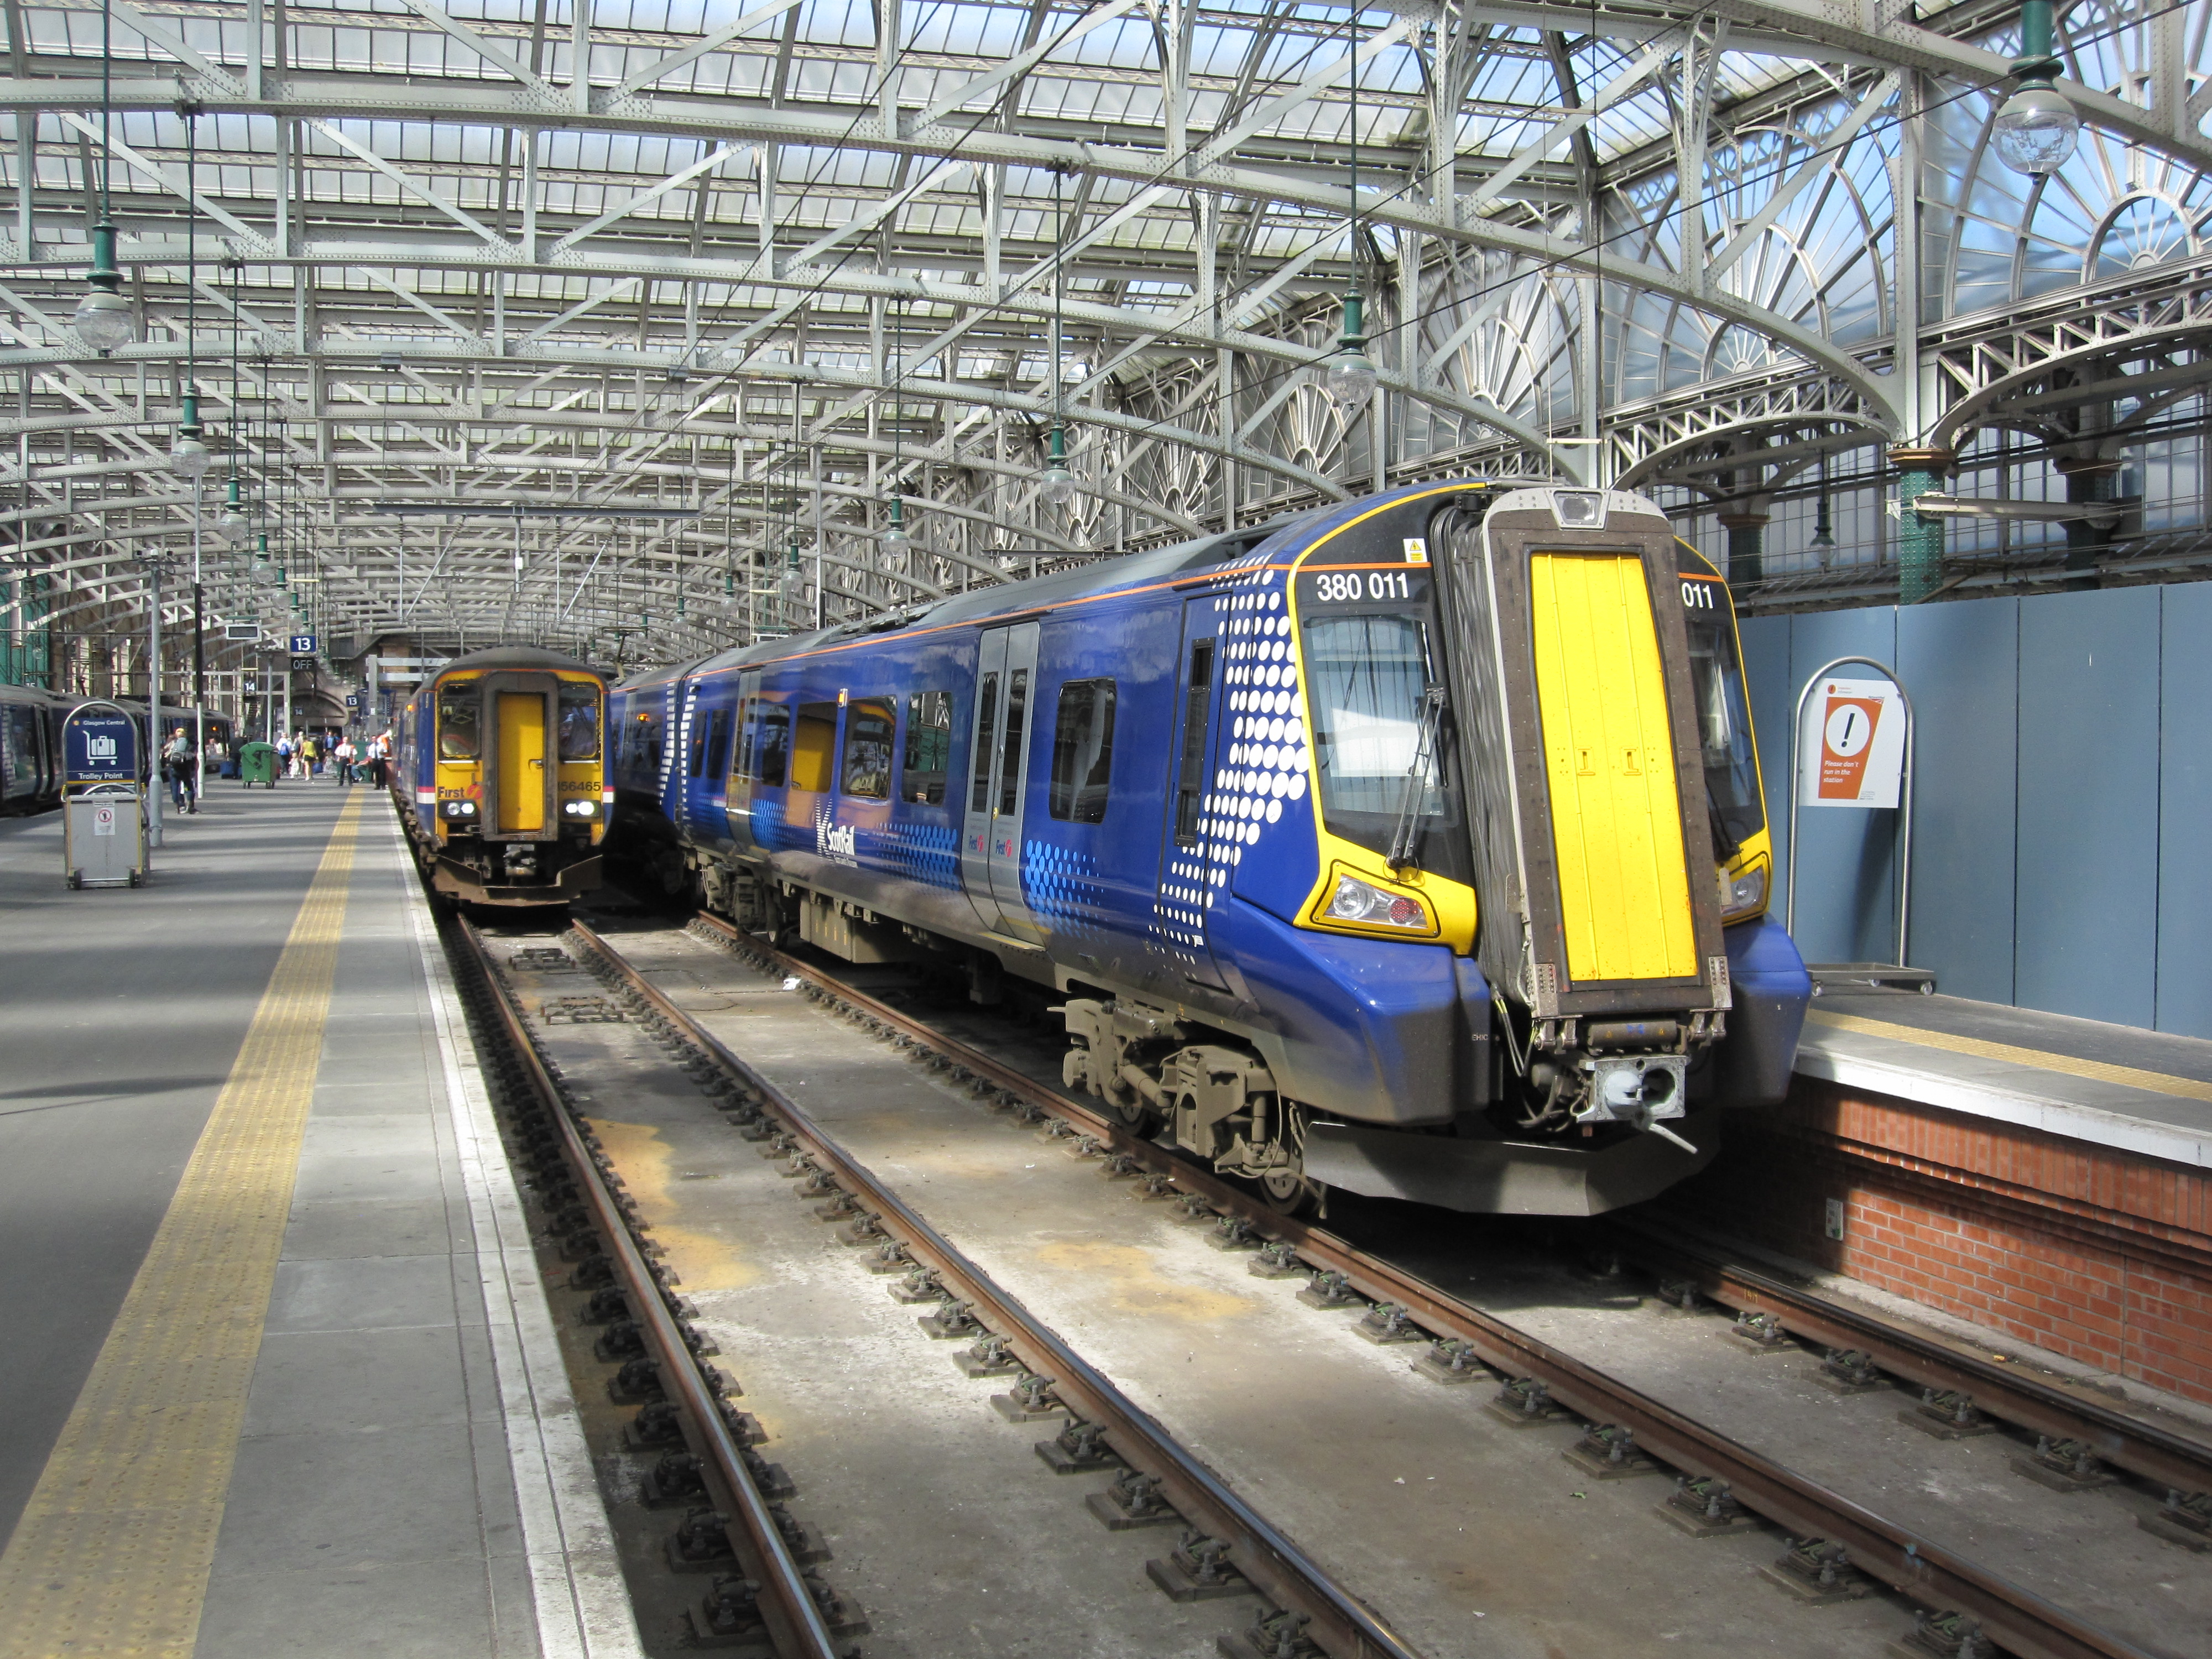 ScotRail Class 380 train in Glasgow